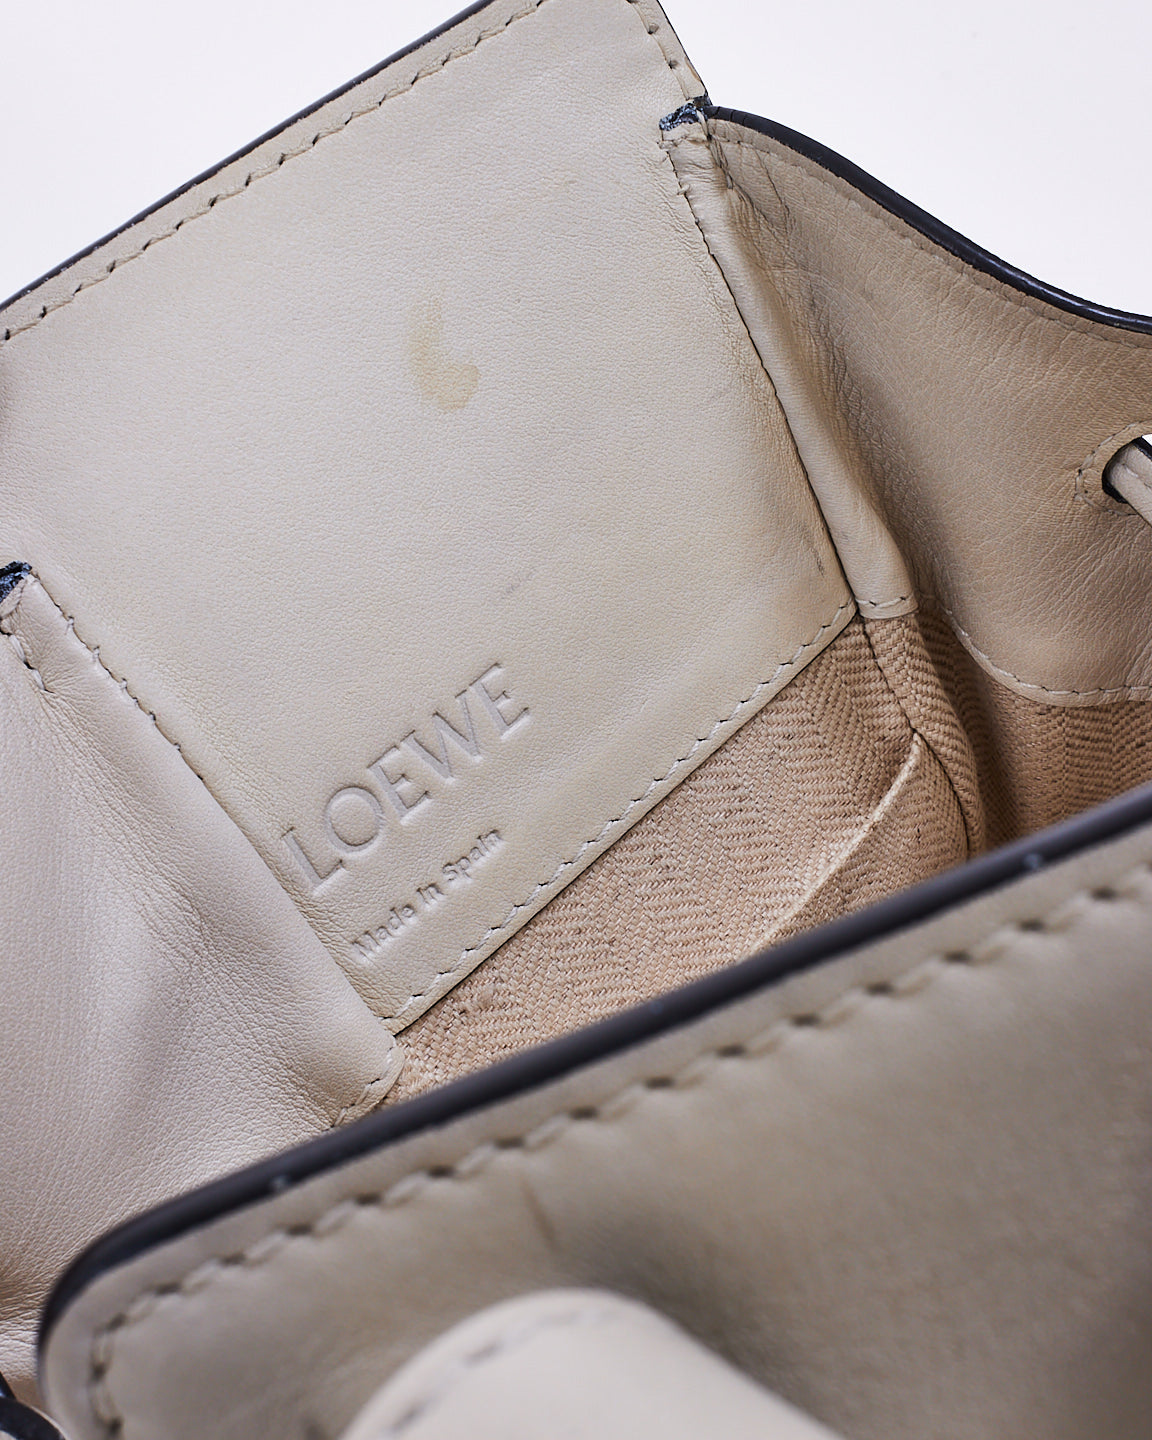 Loewe White Leather Mini Hammock Bag